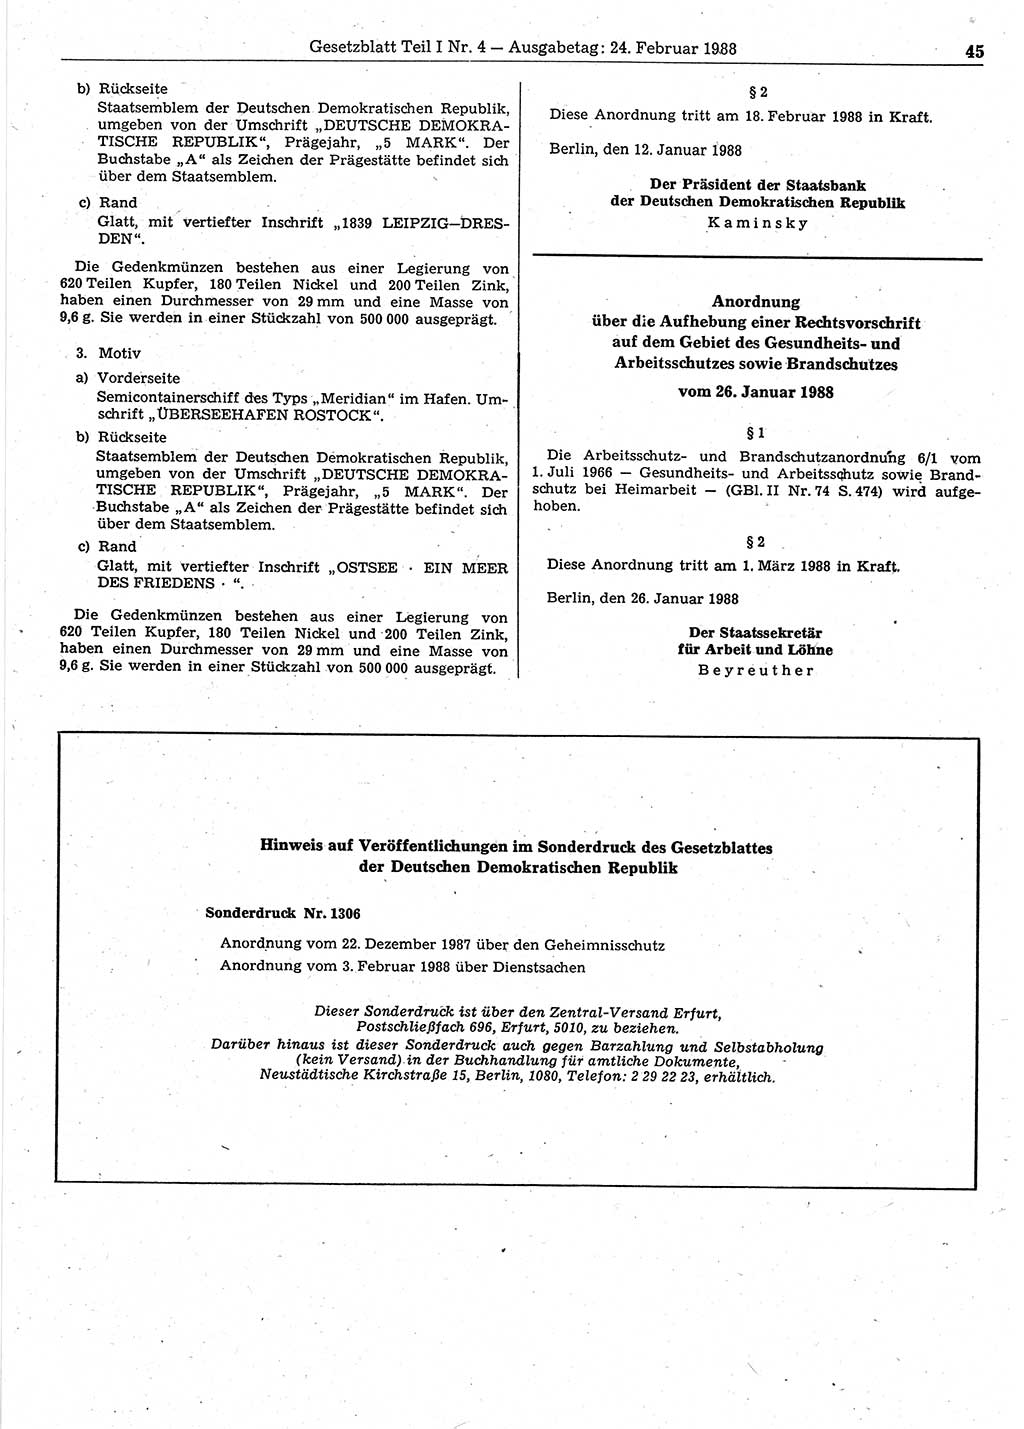 Gesetzblatt (GBl.) der Deutschen Demokratischen Republik (DDR) Teil Ⅰ 1988, Seite 45 (GBl. DDR Ⅰ 1988, S. 45)